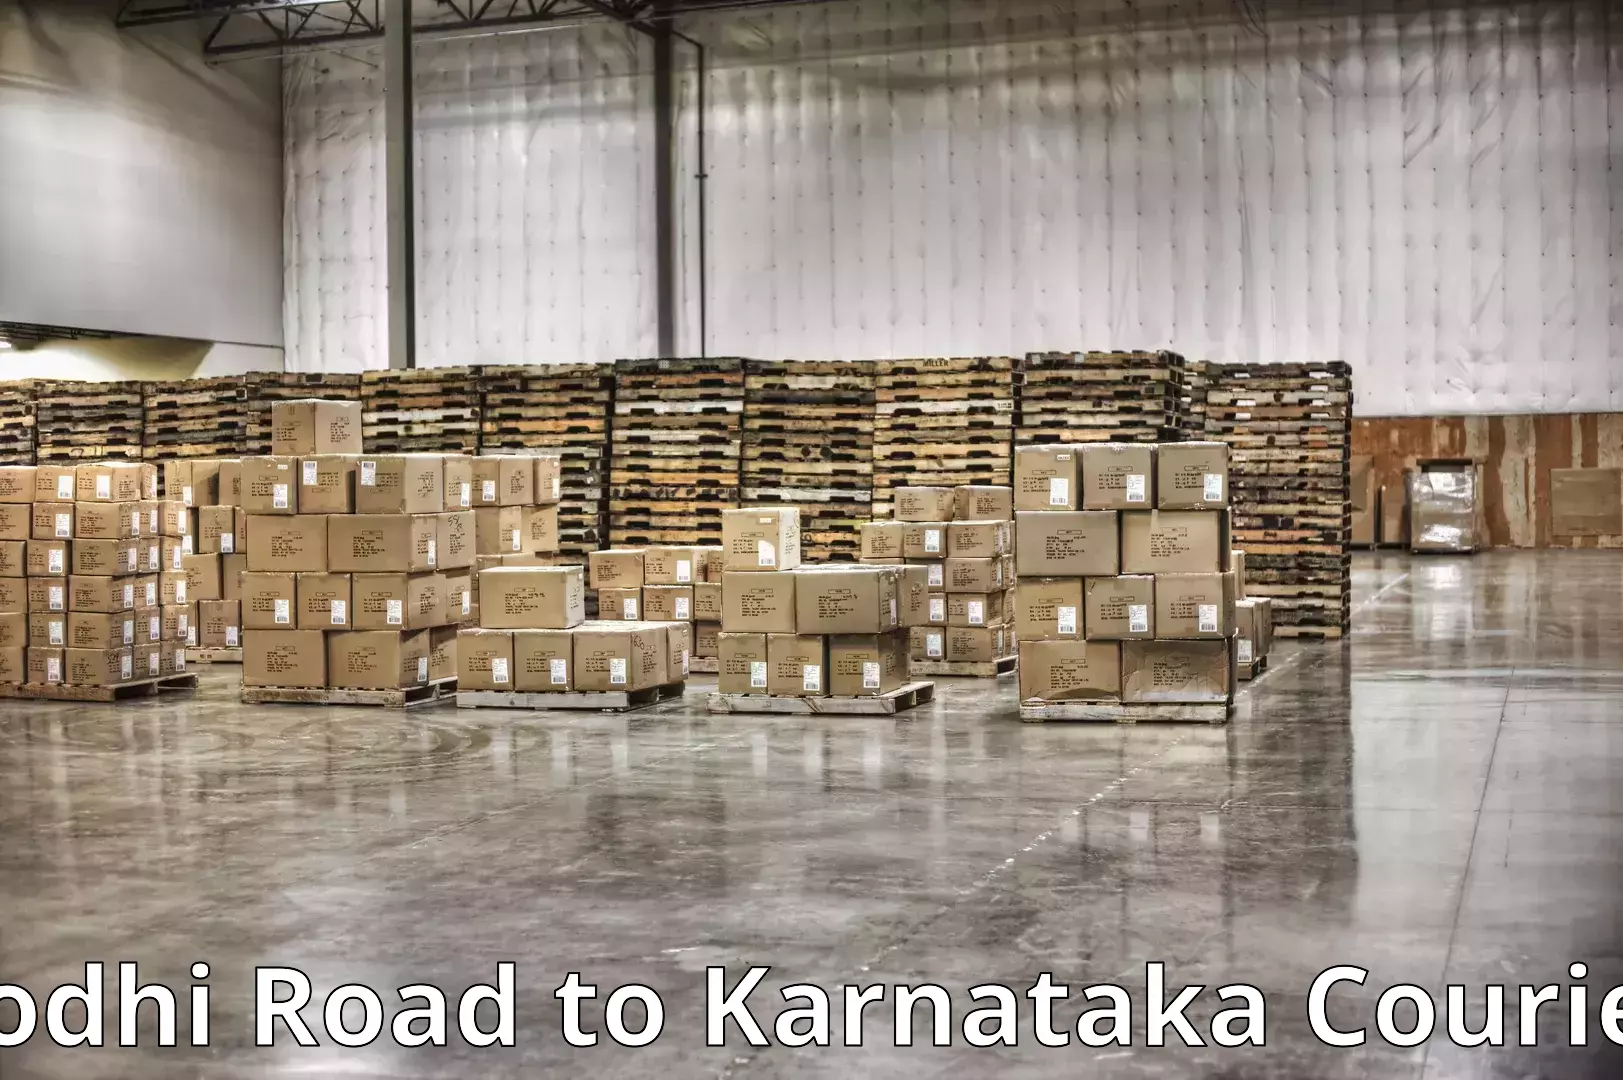 Home moving experts Lodhi Road to Kanjarakatte